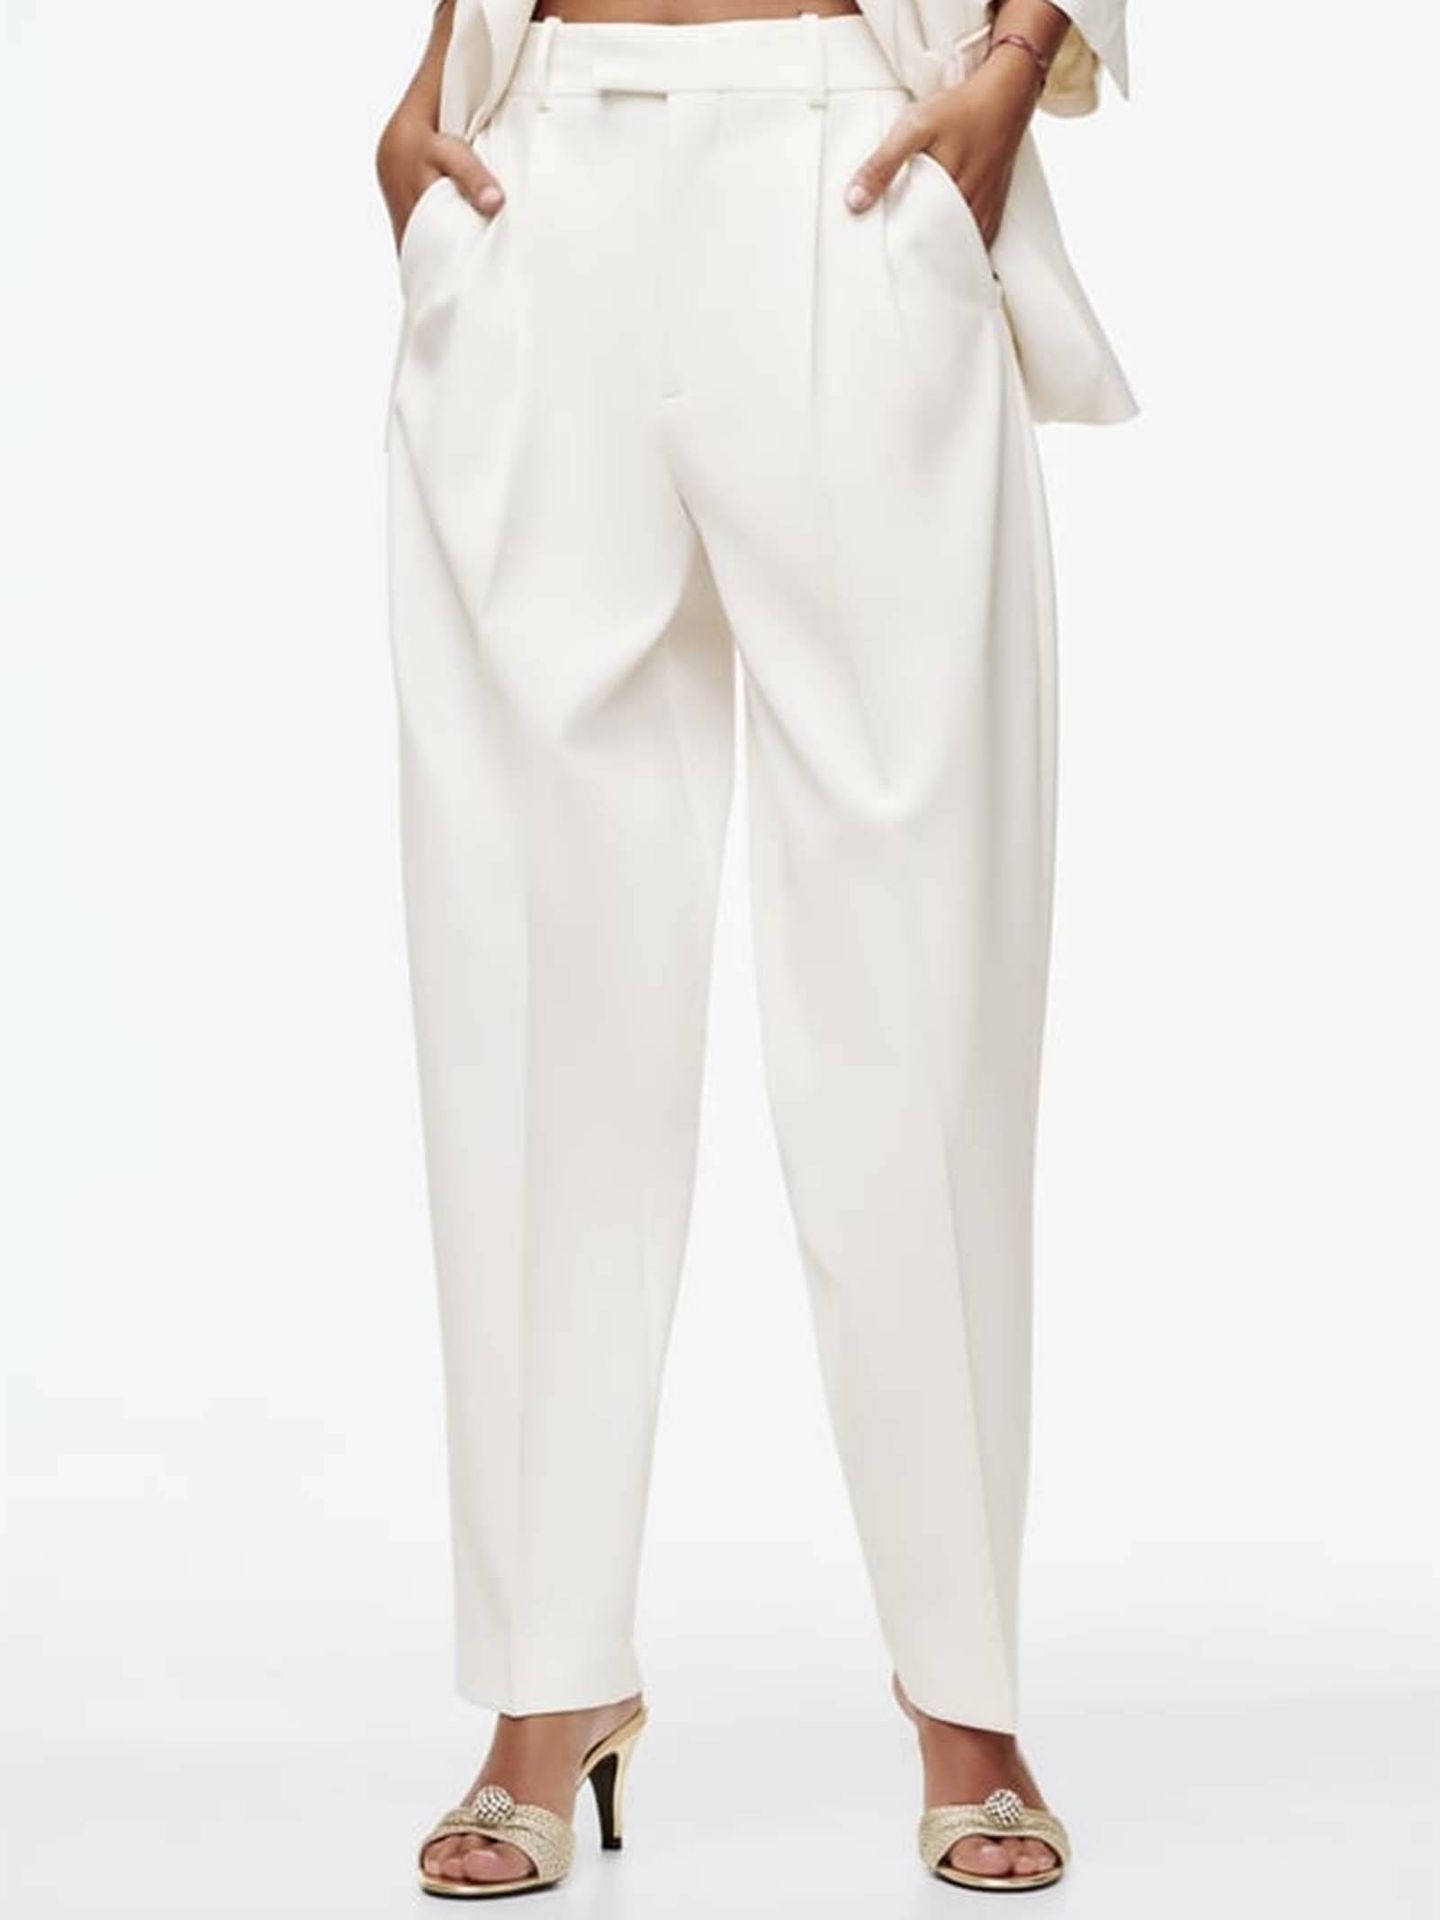 Elegante y cómodo: el pantalón que será tendencia este otoño para el trabajo. (Zara/Cortesía)